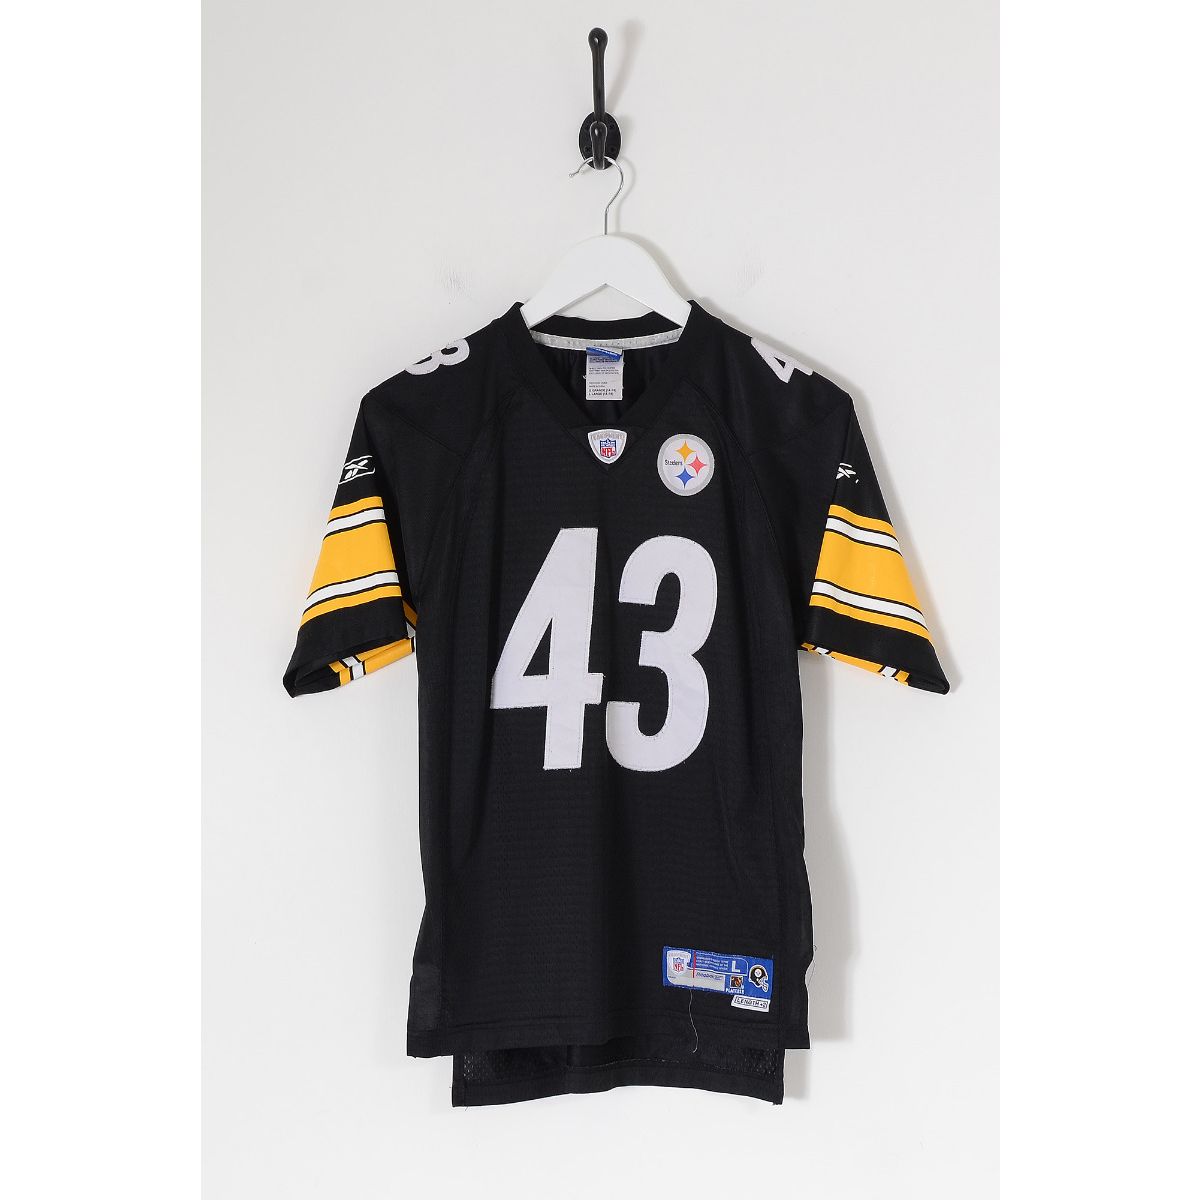 Vintage REEBOK NFL Pittsburgh Steelers American Football Jersey Black Large